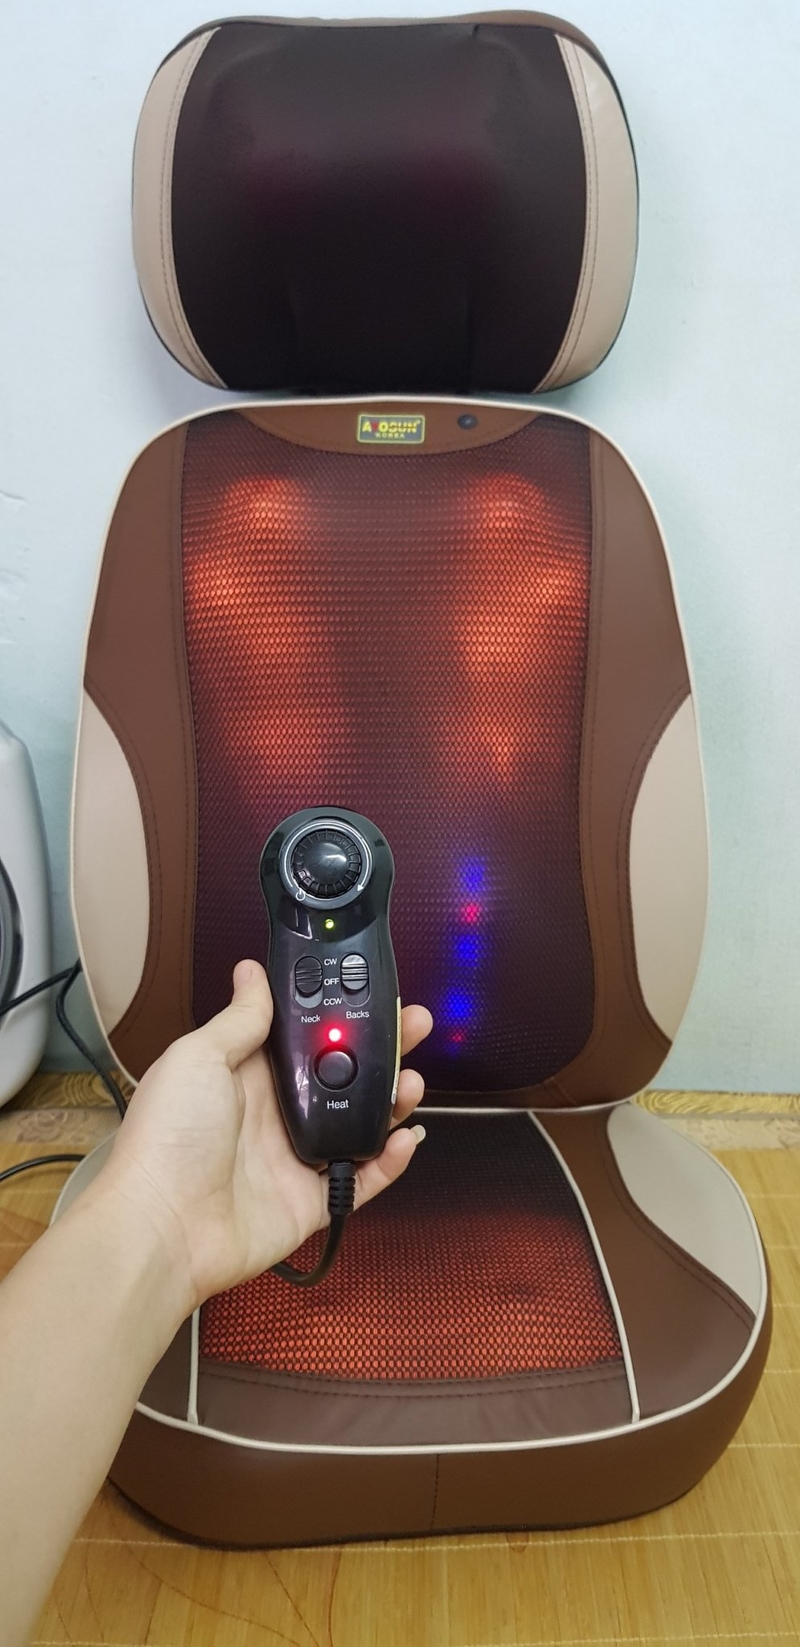 Mua ghế massage chính hãng Hàn Quốc ở đâu: Ghế Ayosun Hàn Quốc có thể tách  rời với 30 bi mát xa - 2.900.000đ | Nhật tảo